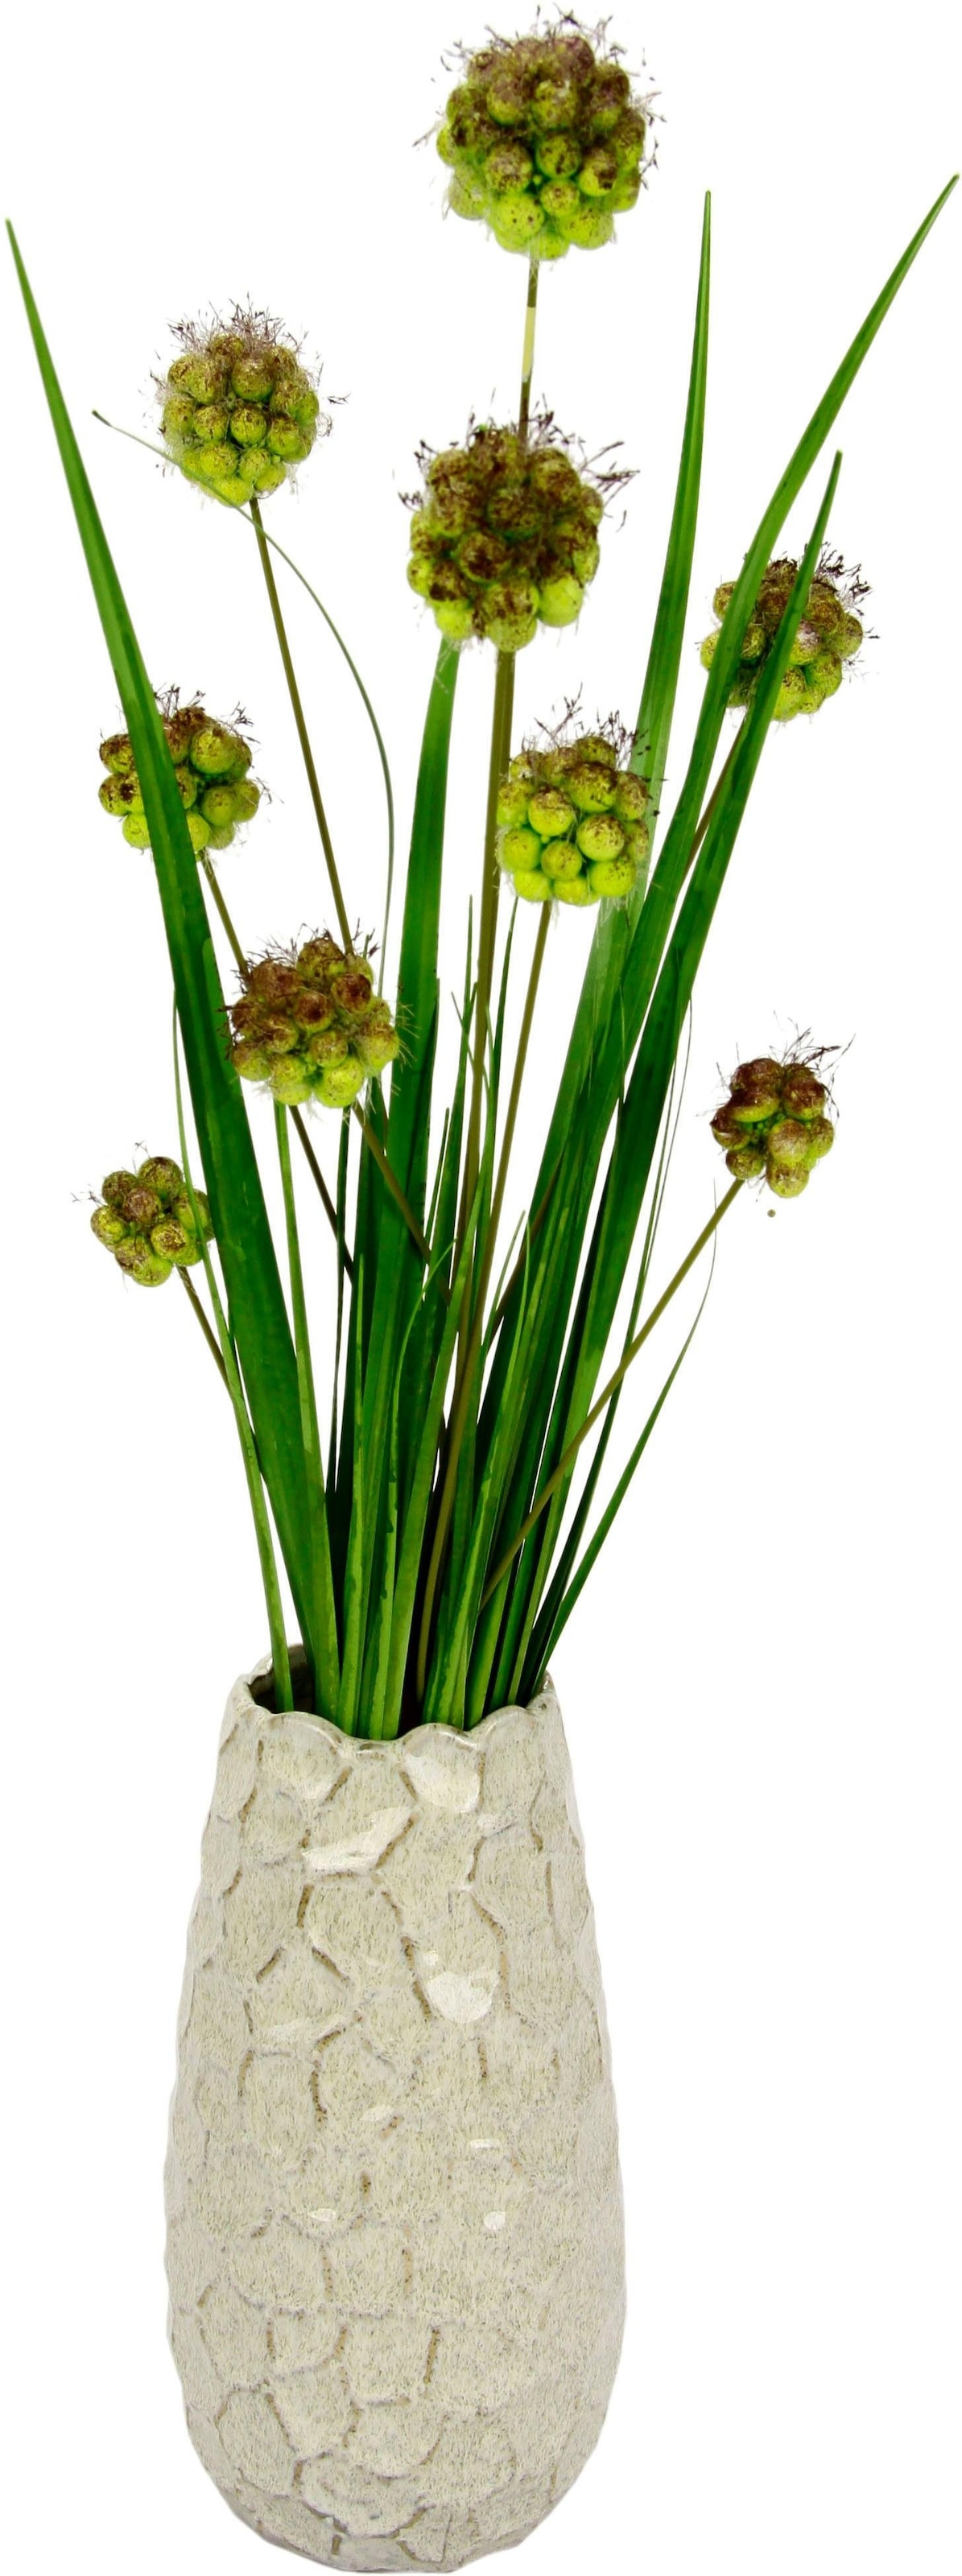 I.GE.A. Kunstgras »Alliumgrasbusch«, in Vase bei OTTO kaufen